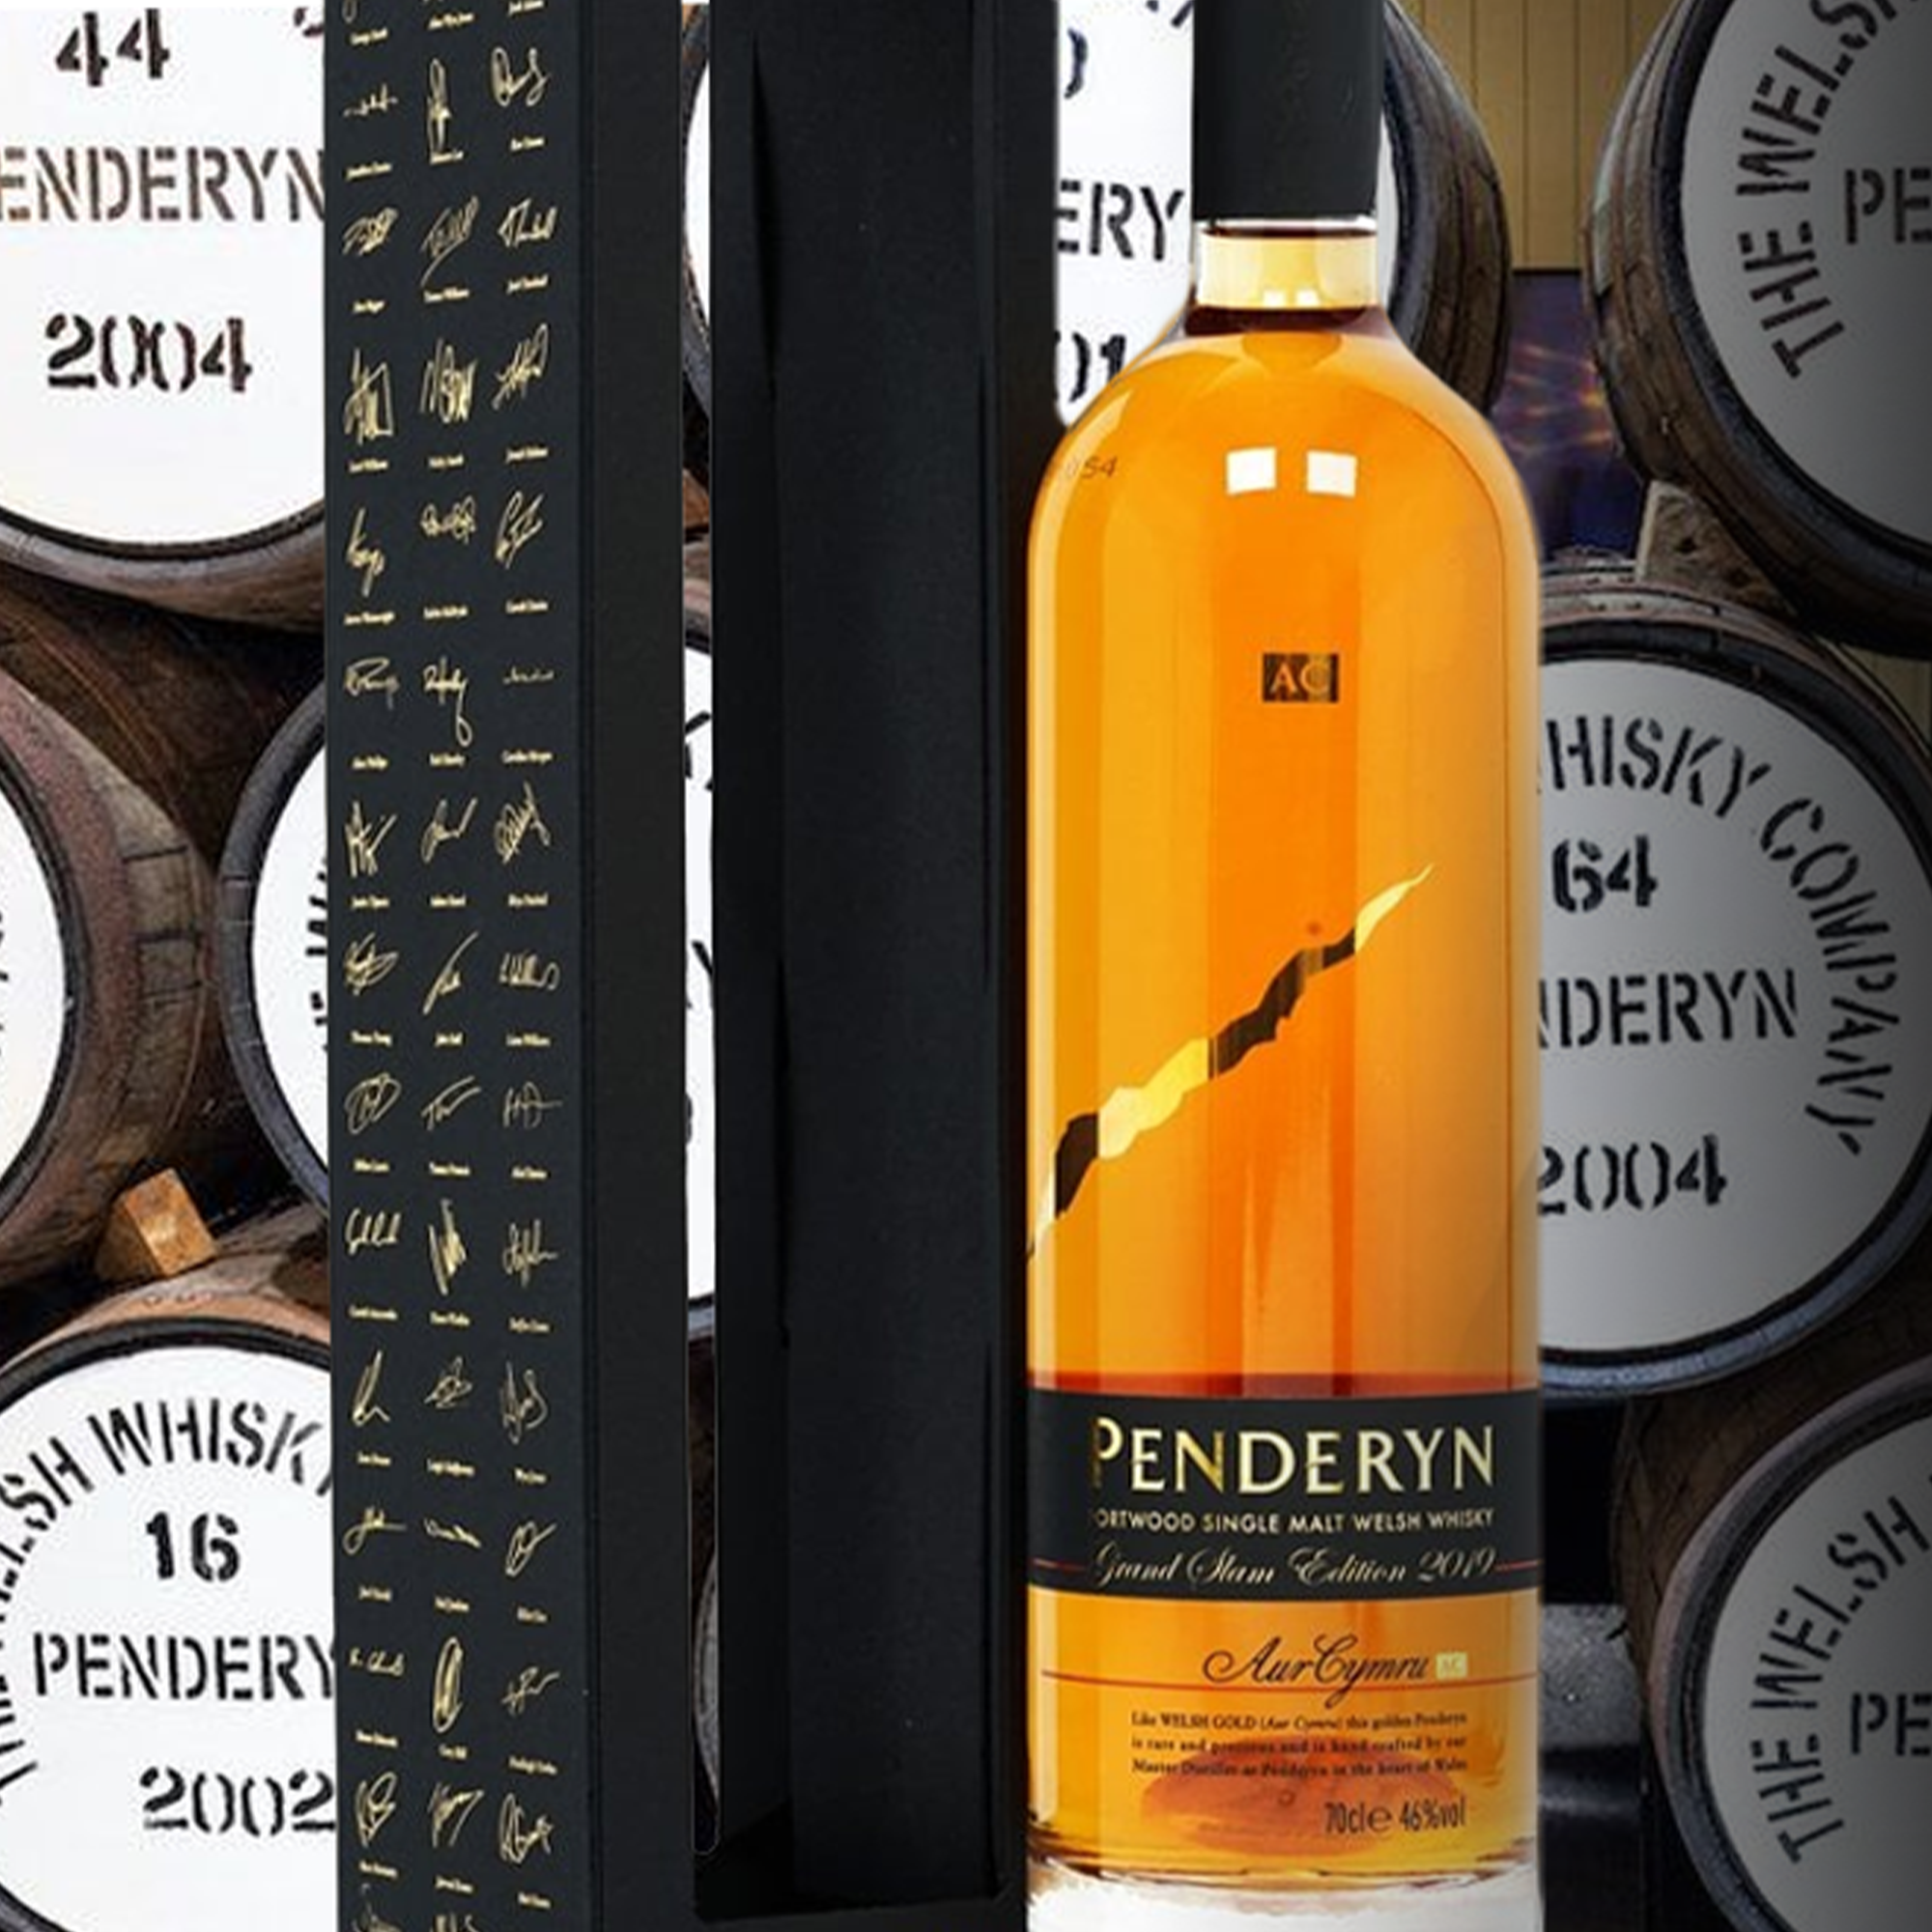 Penderyn Rich Oak Single Malt Scotch